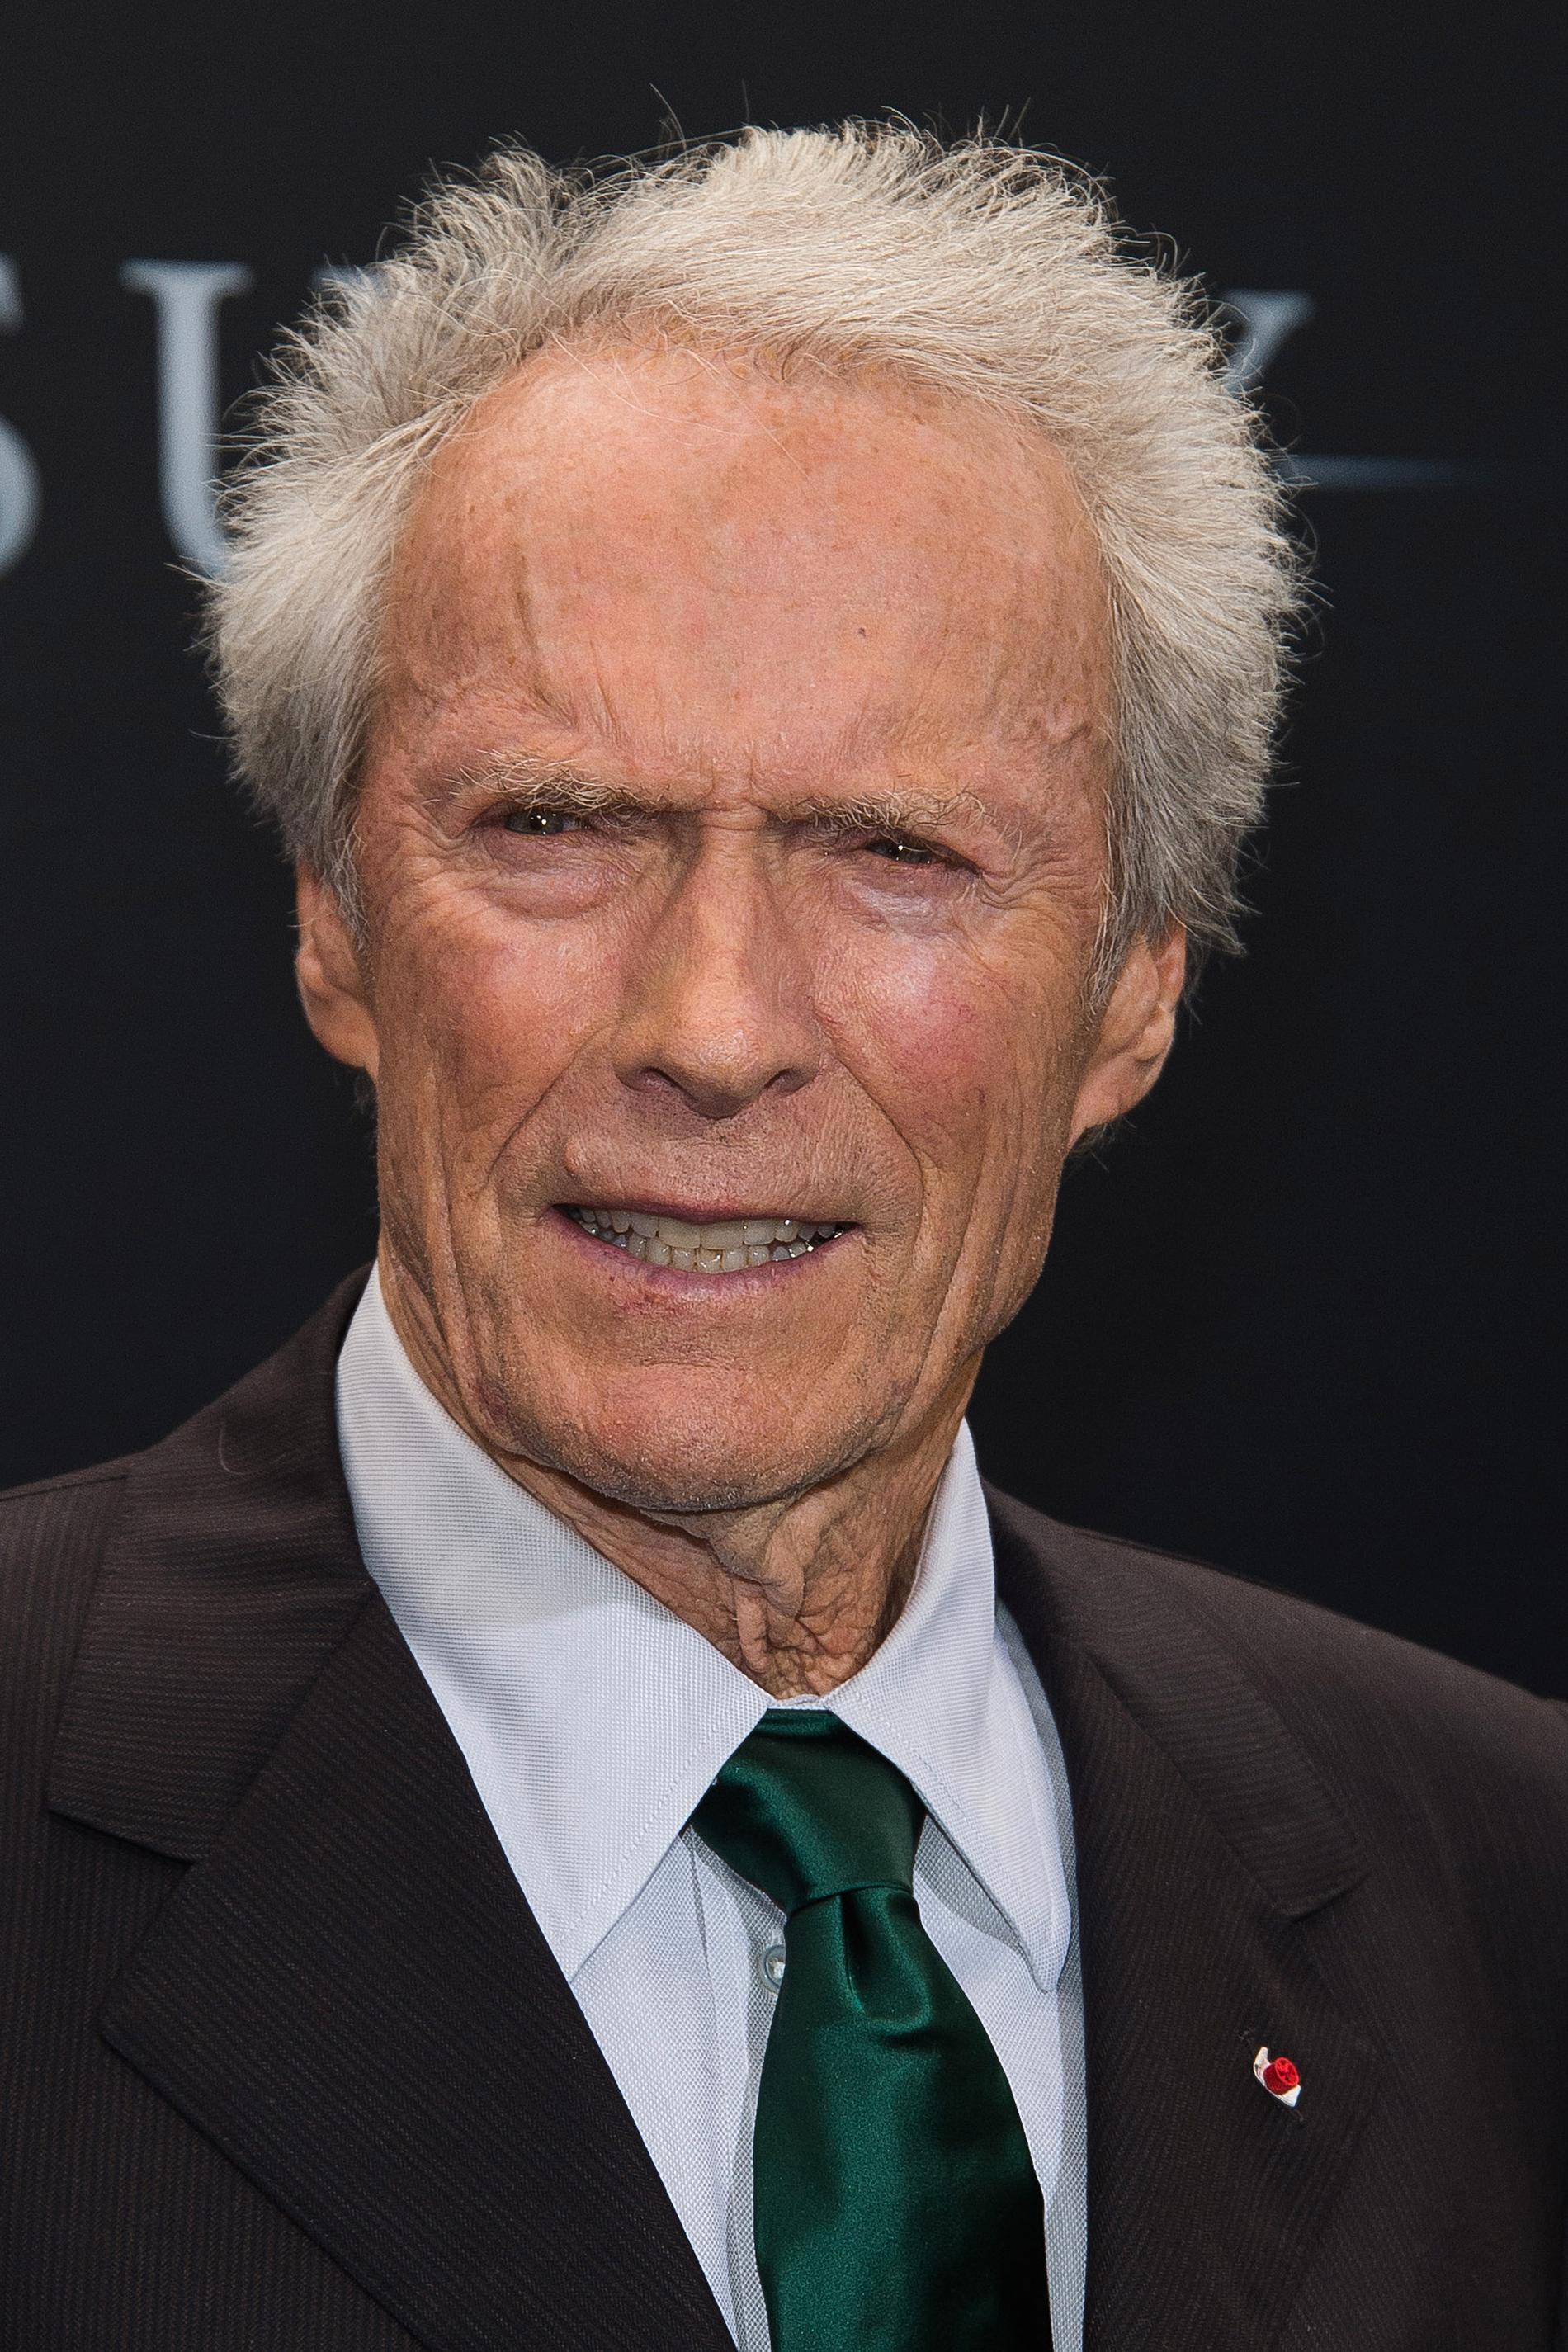 Clint Eastwood har medverkat i omkring 50 filmer och regisserad 38 och kan vid 90 års ålder se tillbaka på en mycket varierad karriär. Arkivbild.